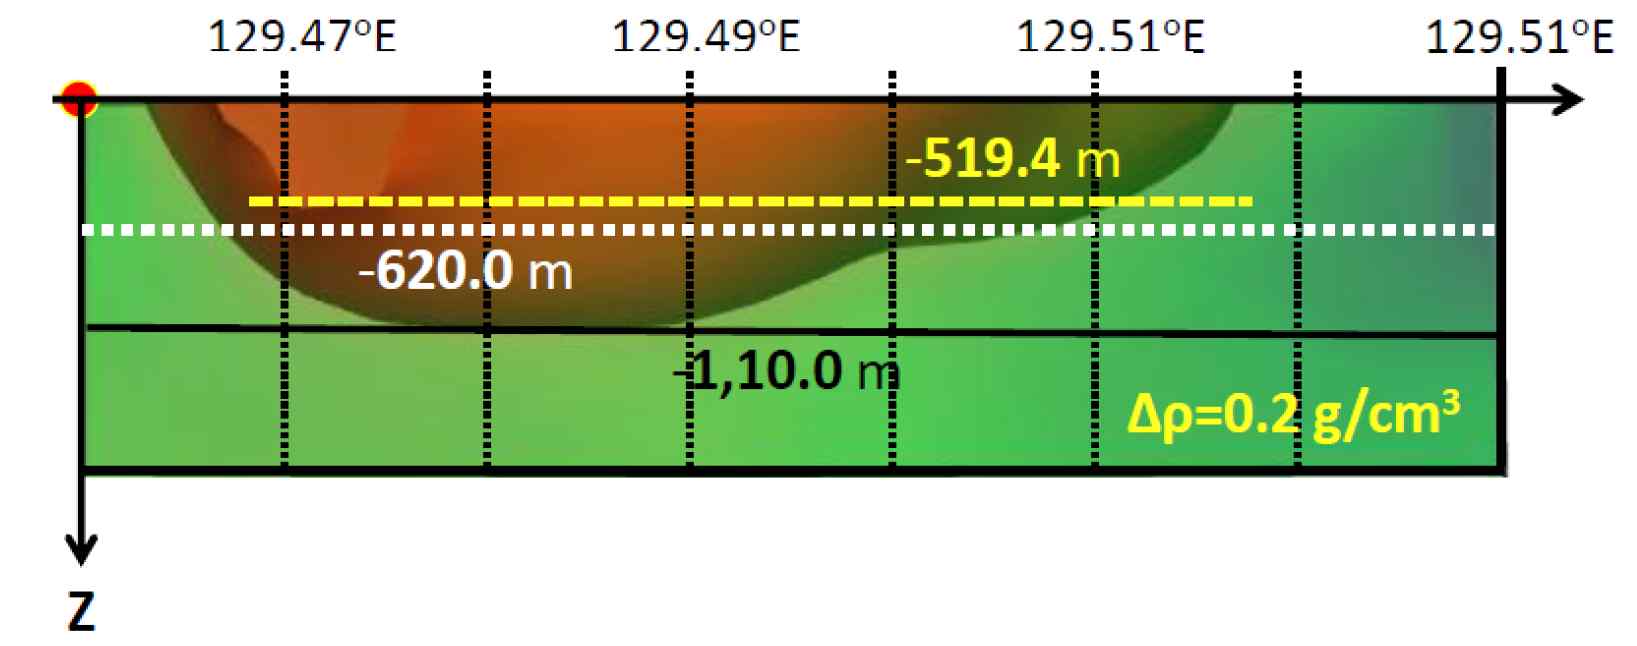 기반암 형태 (갈색), 분지 최대 심도 (검은색), 자력 평균심도 및 해당 위치 (노란색) 및 중력 평균심도 (흰색).